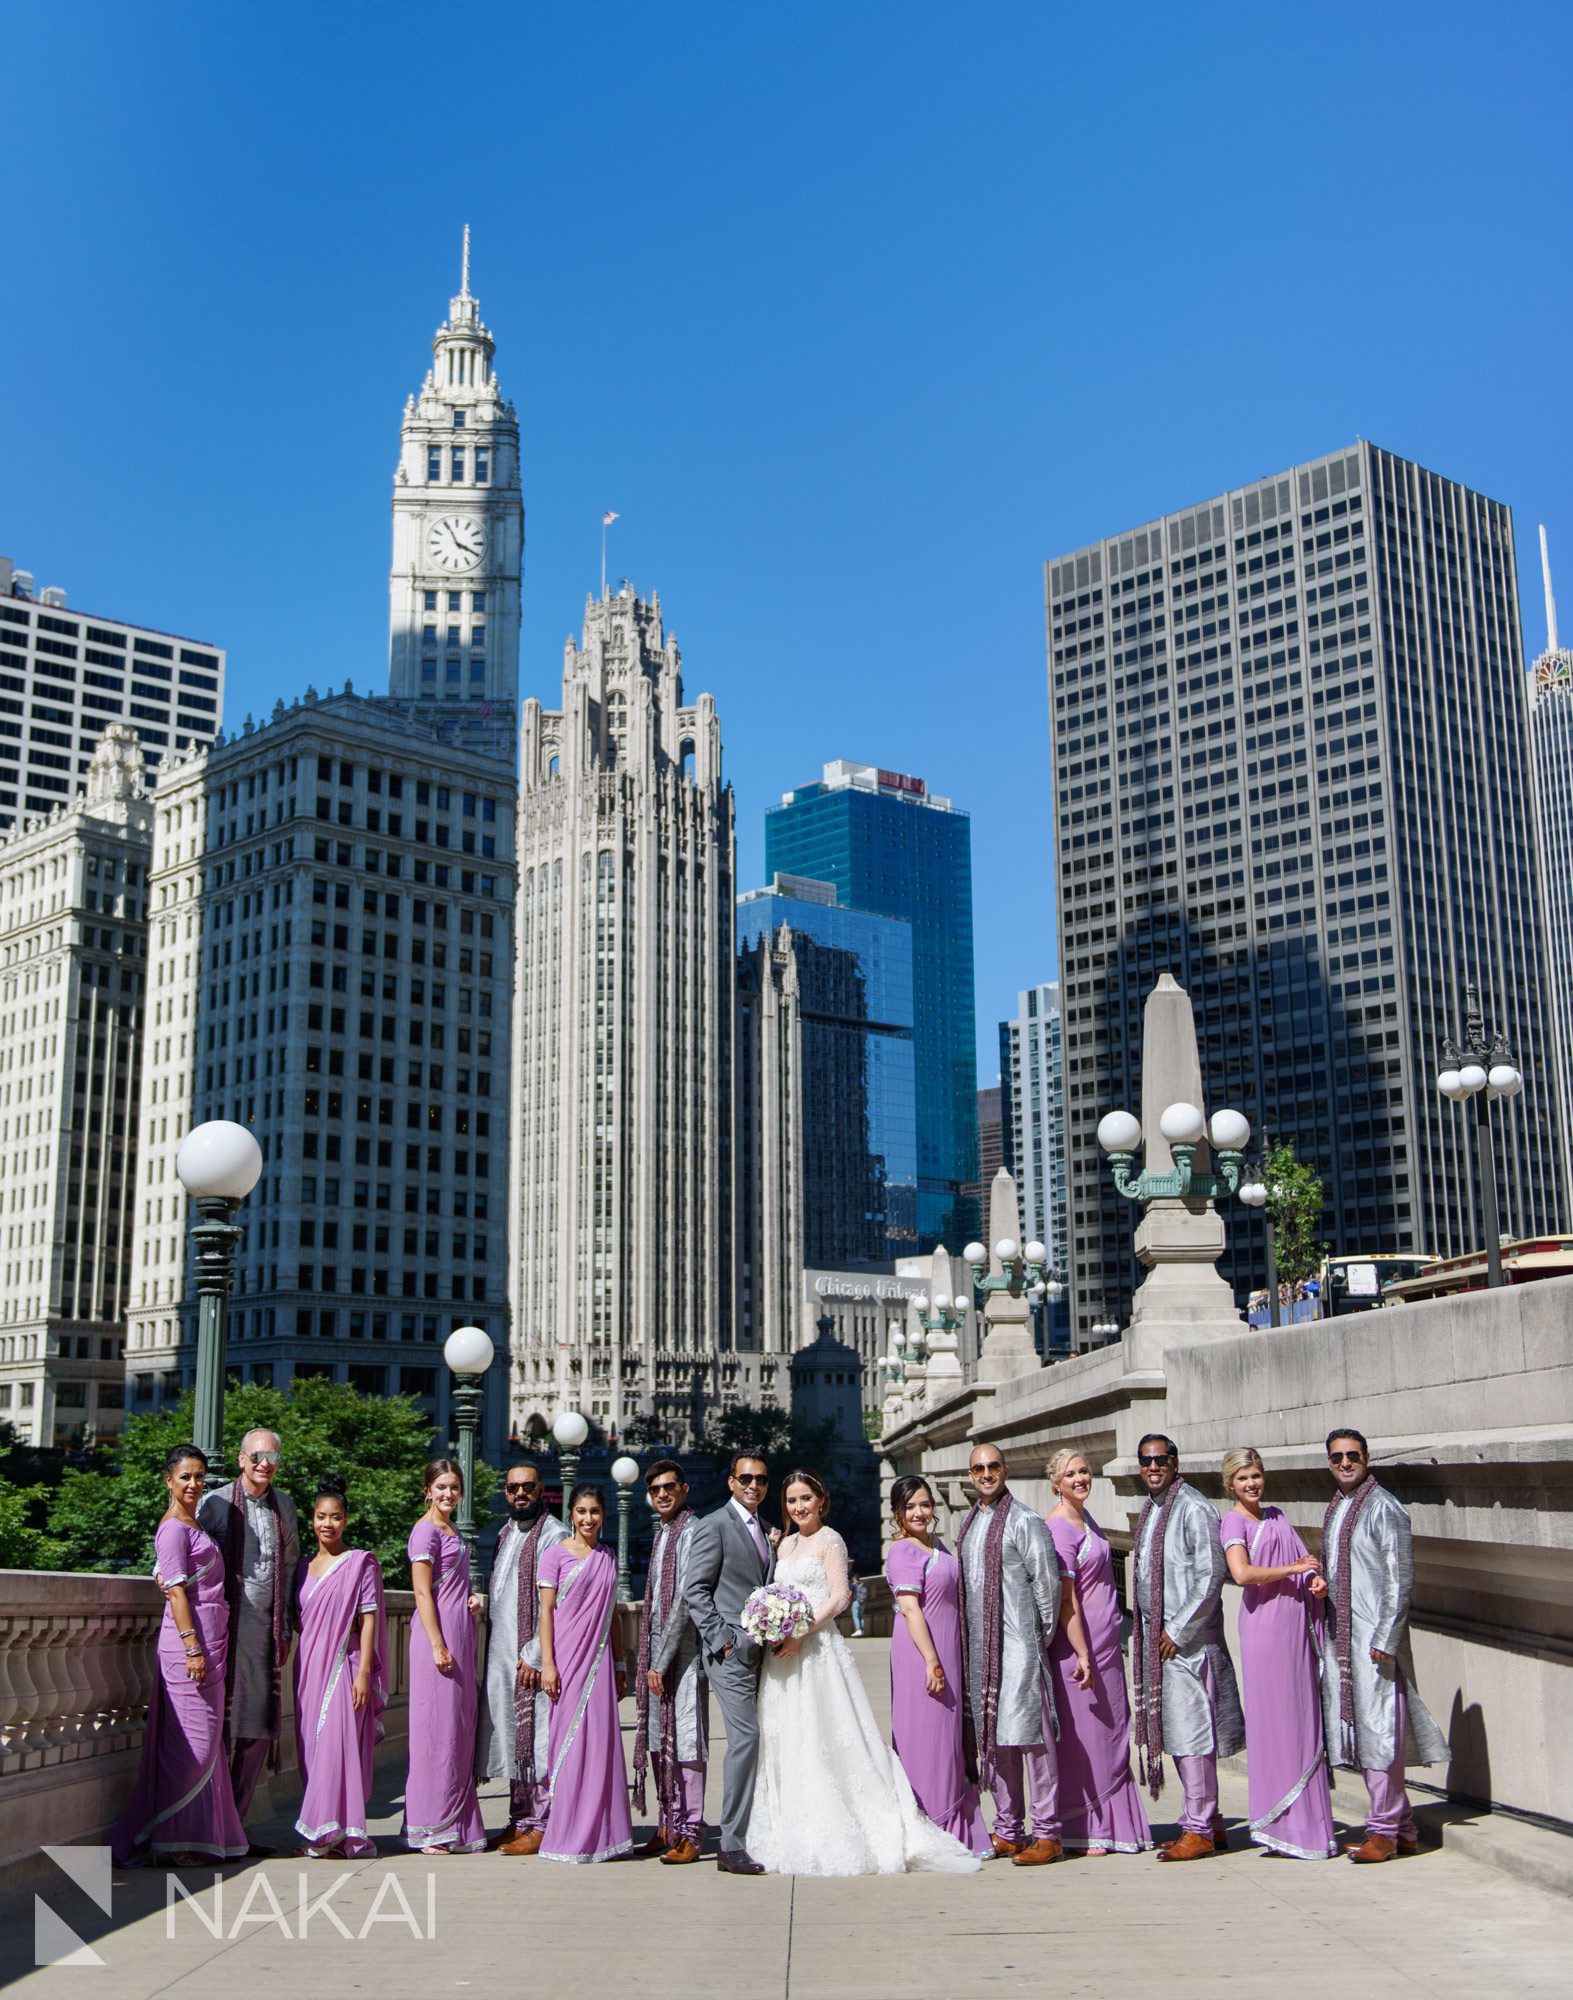 Chicago riverwalk wedding photos 